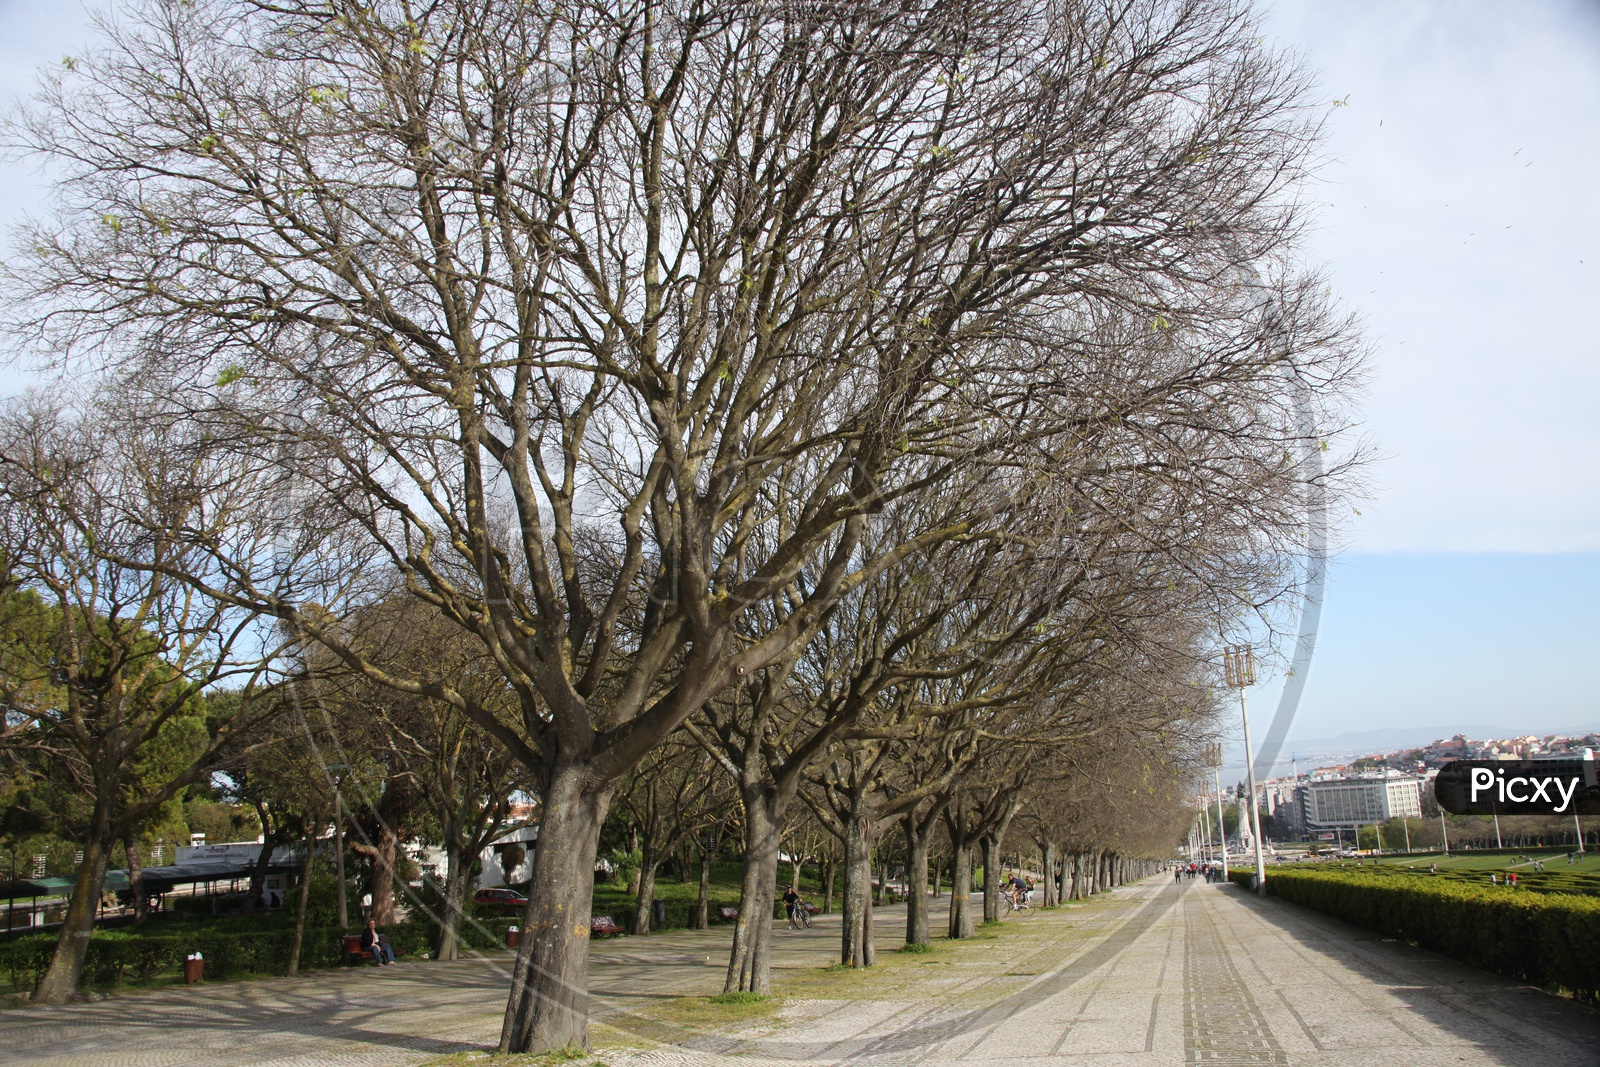 Oak trees alongside the pathway